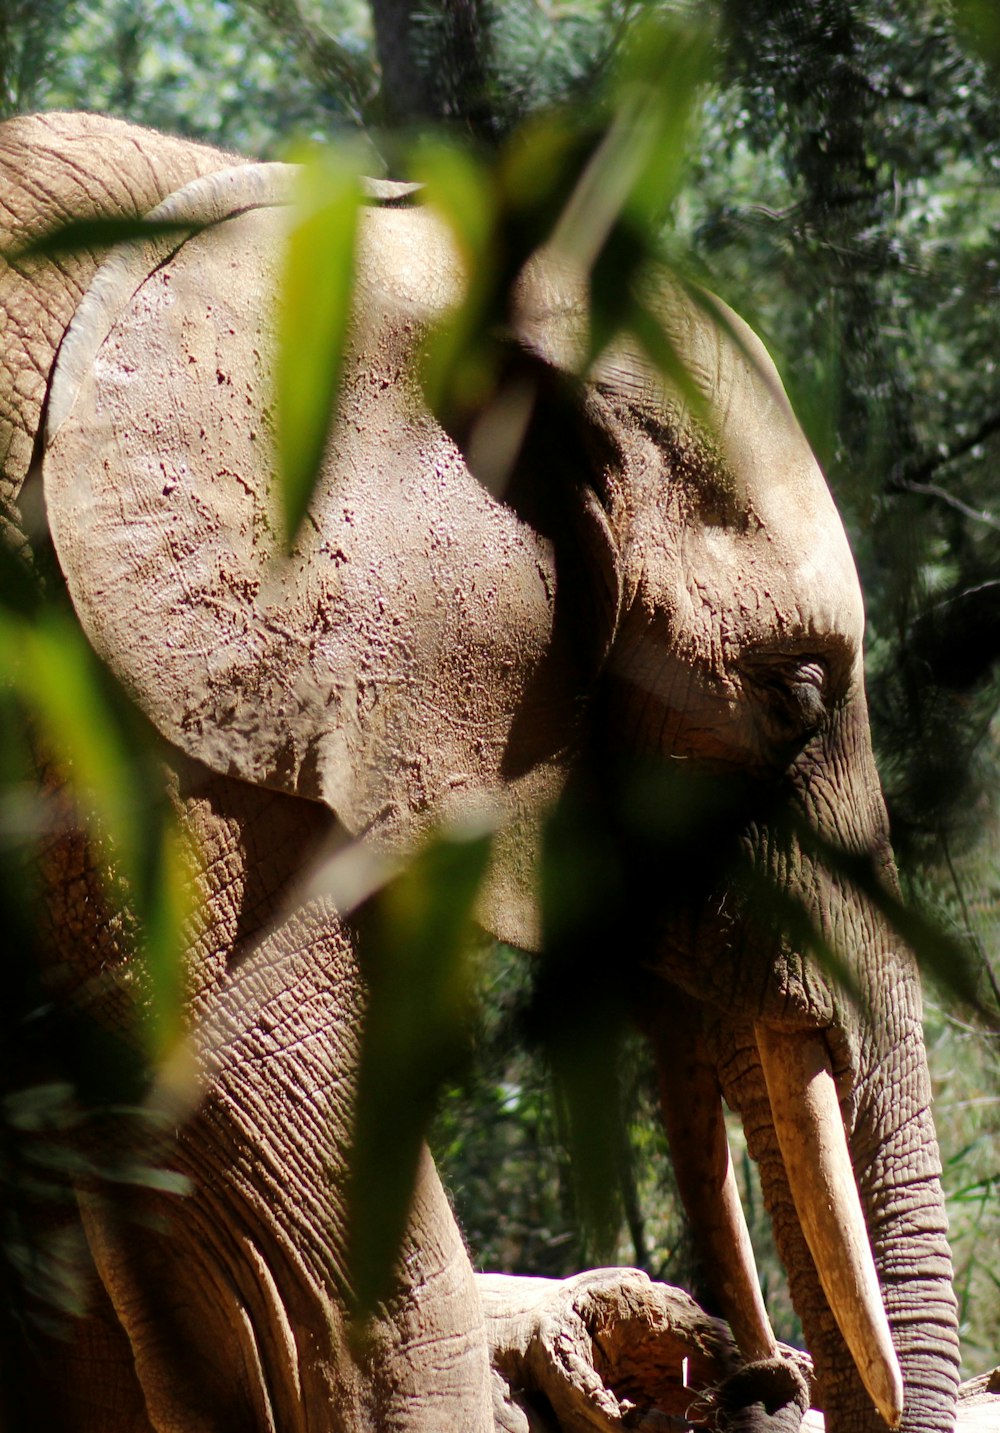 Brauner Elefant in der Nähe von grüner Blattpflanze